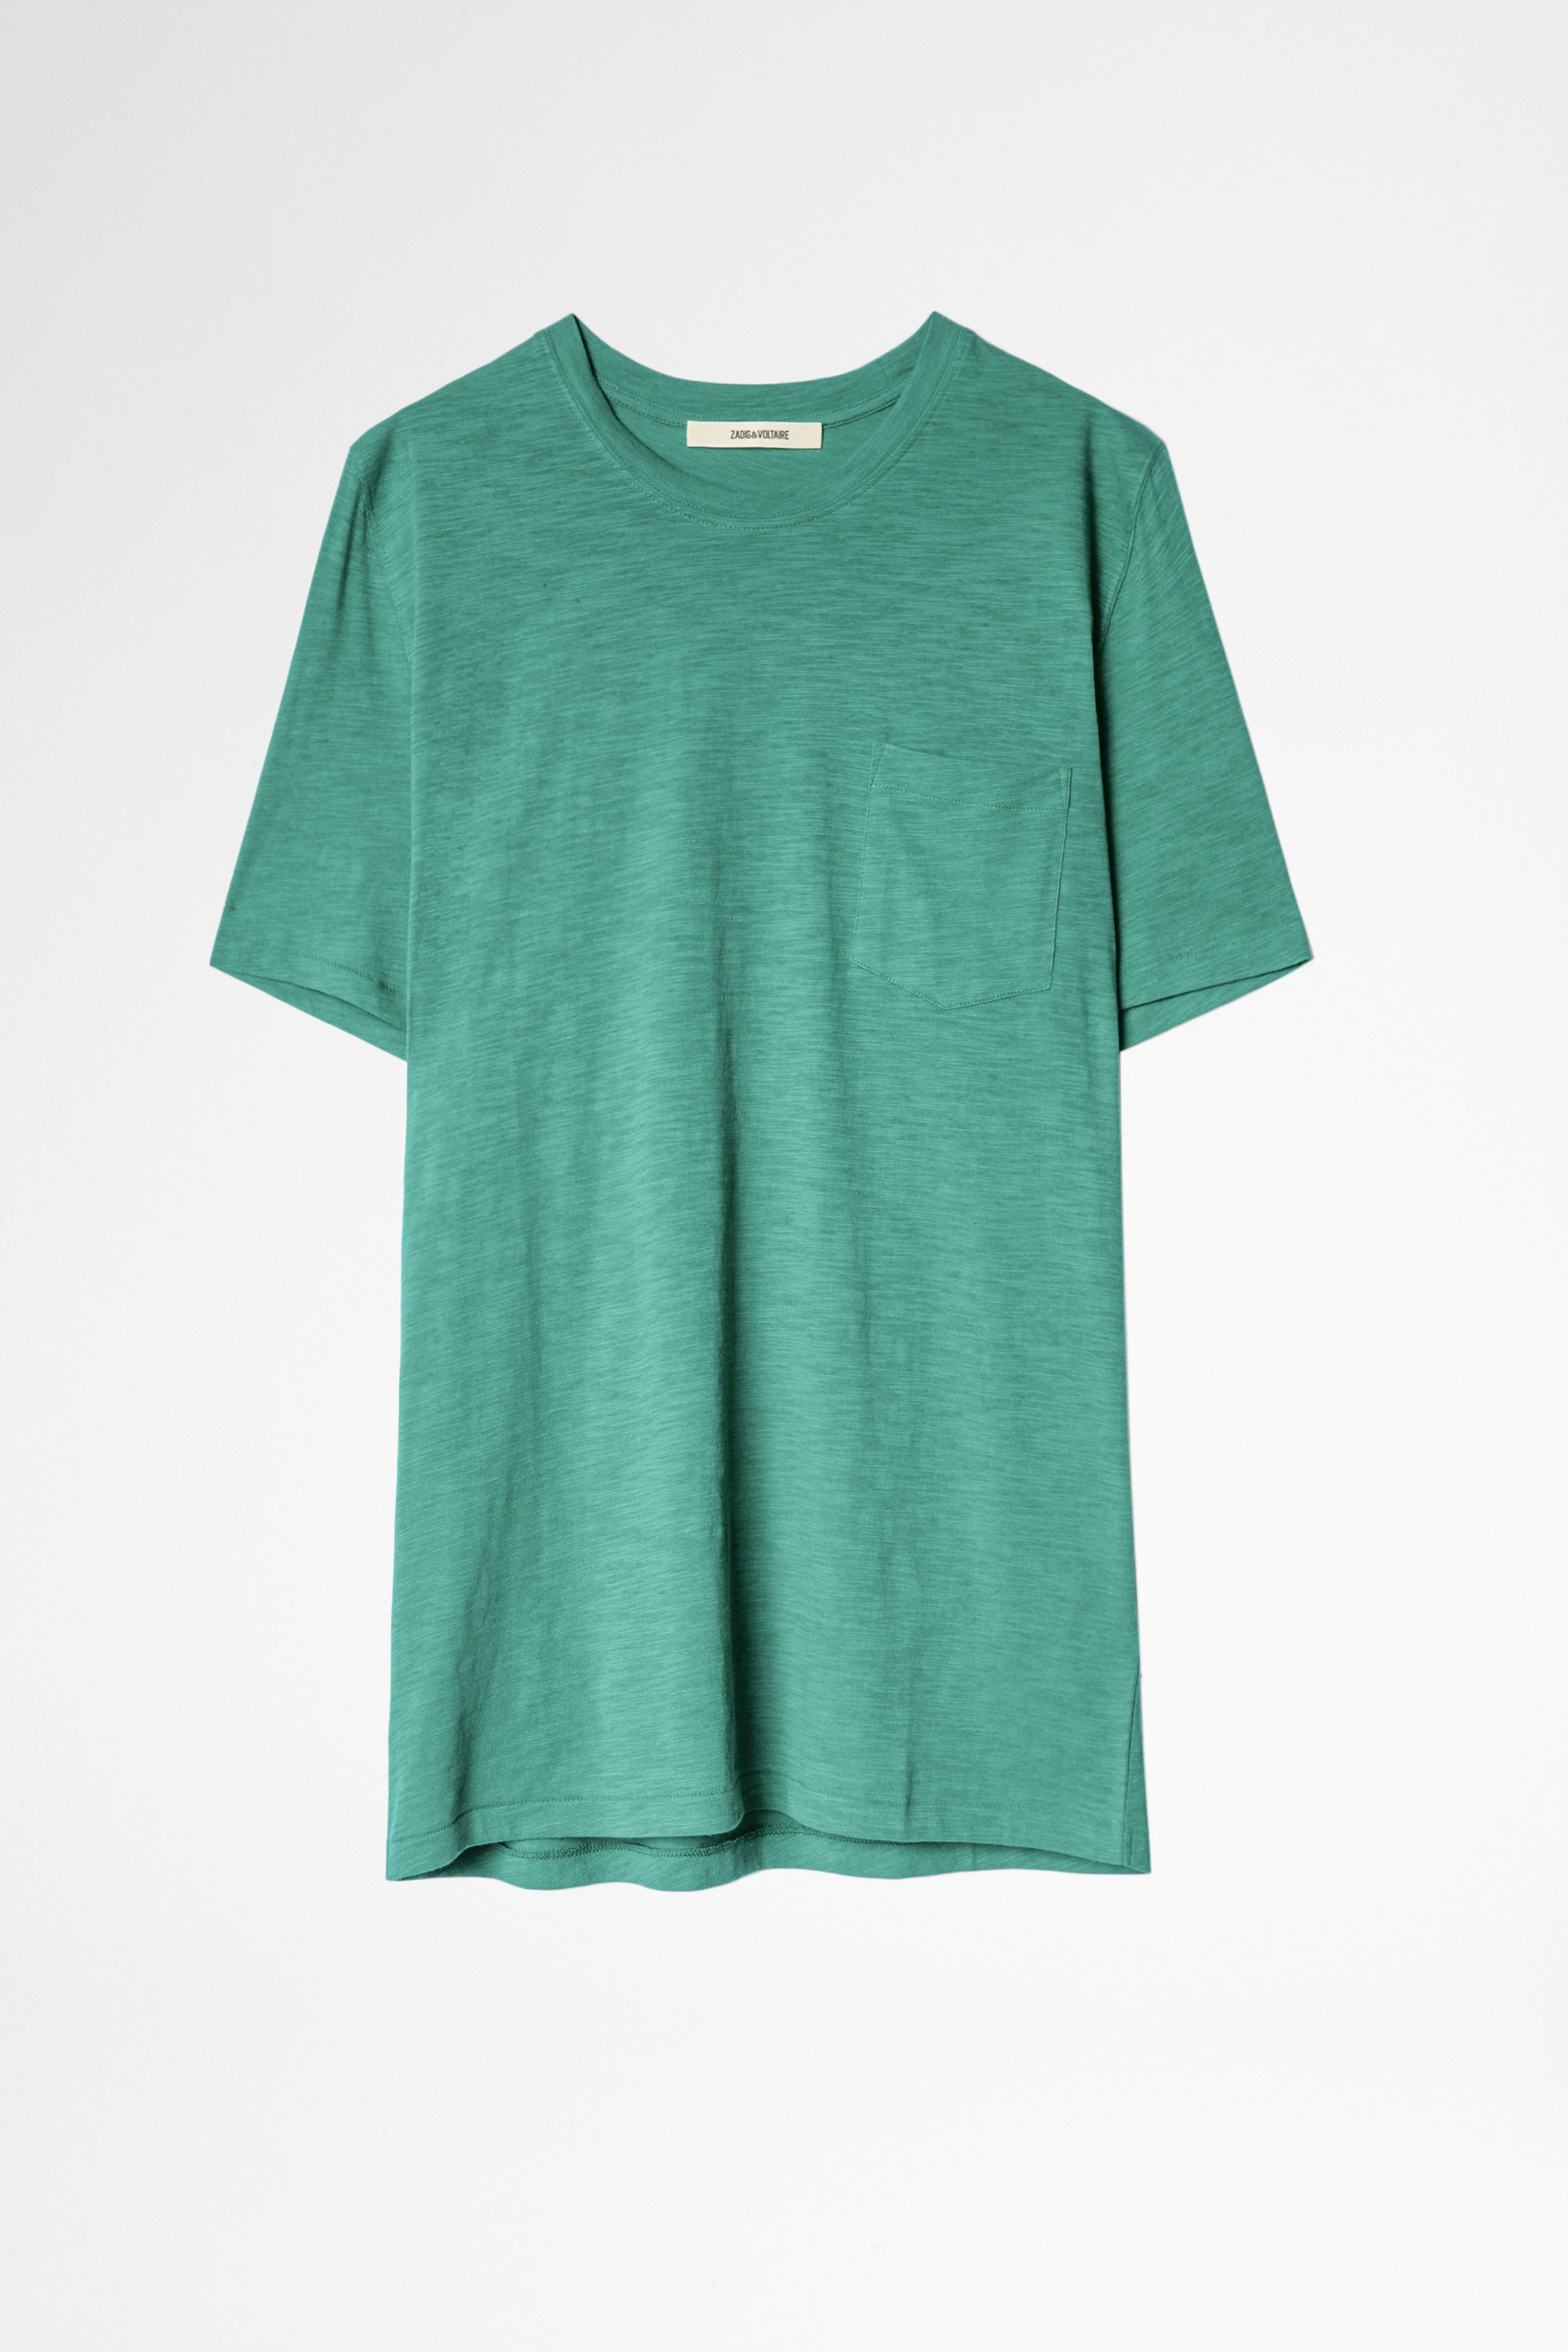 Stockholm Slubbed Cotton T-Shirt Women’s emerald cotton T-shirt